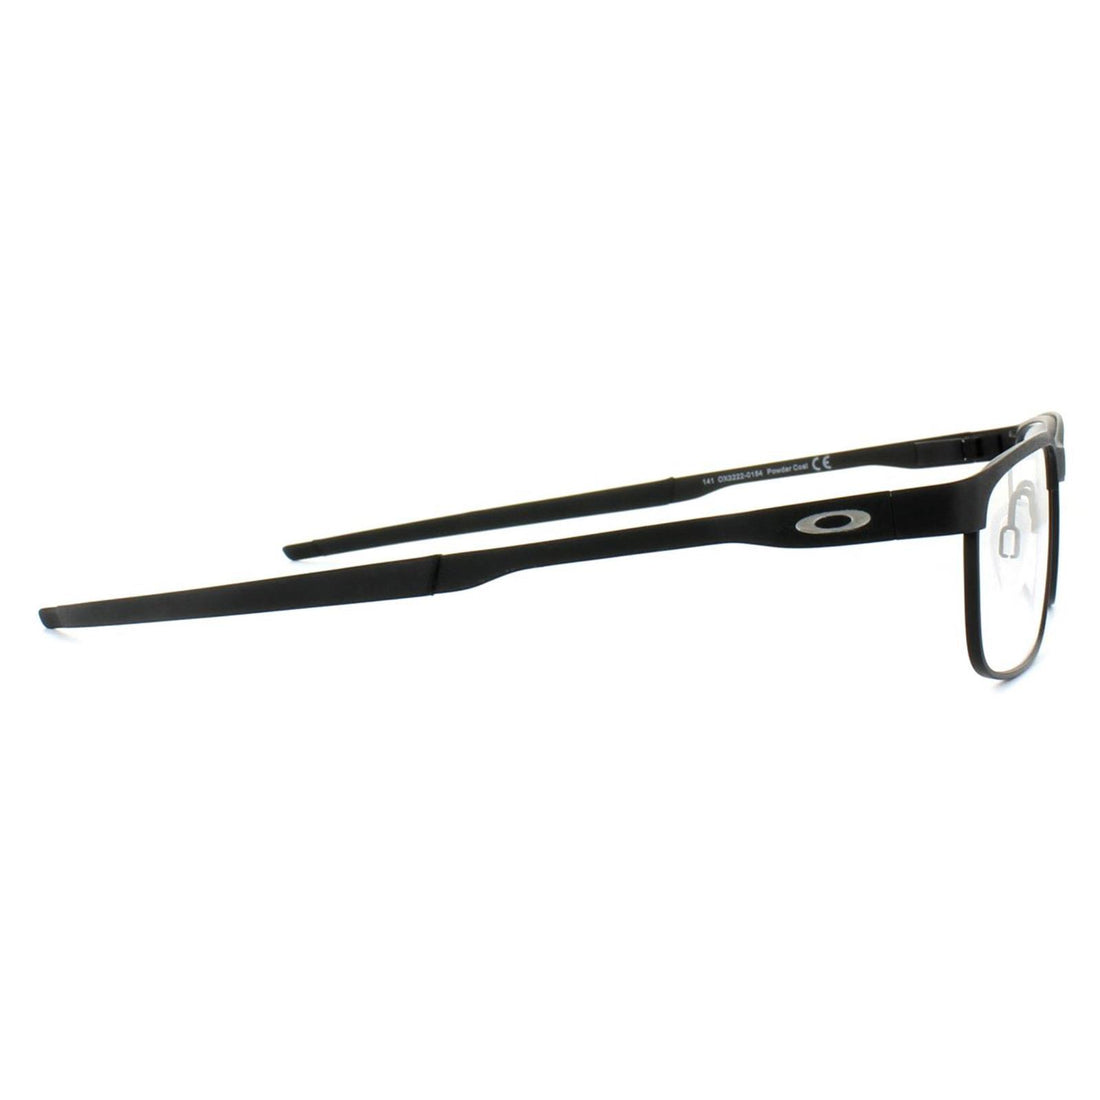 Oakley Glasses Frames Steel Plate OX3222-01 Powder Coal